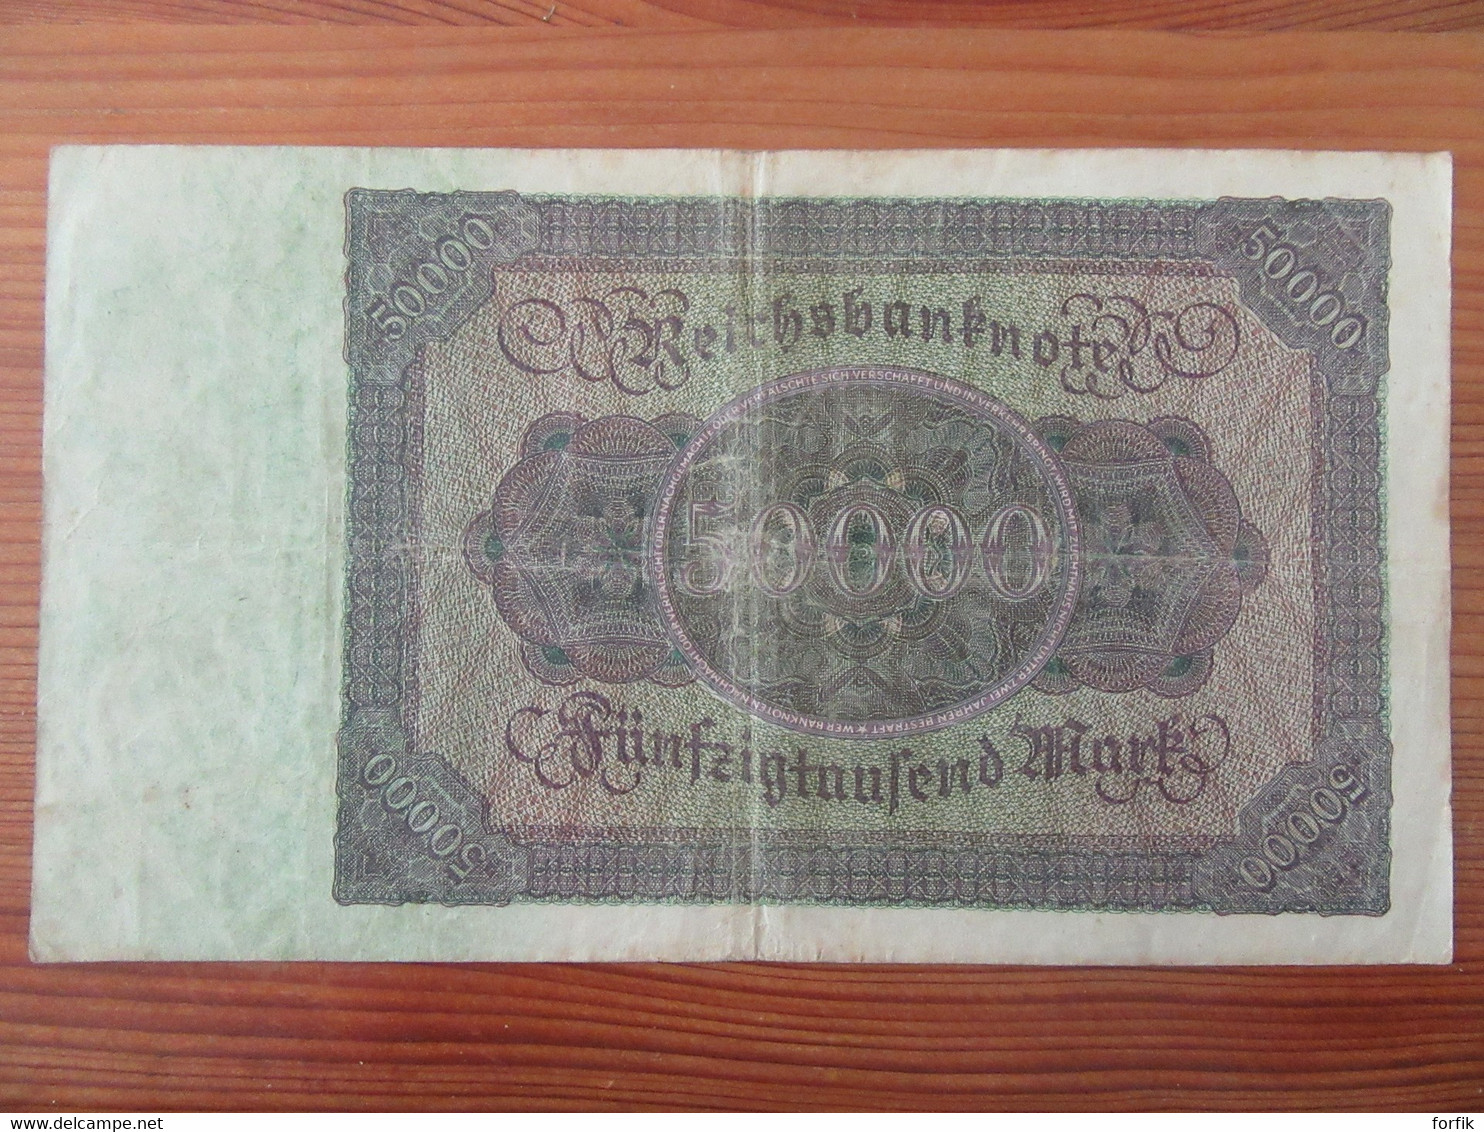 Allemagne - Billet 50 000 / Fünfzigtausend Mark 1922 - 50.000 Mark